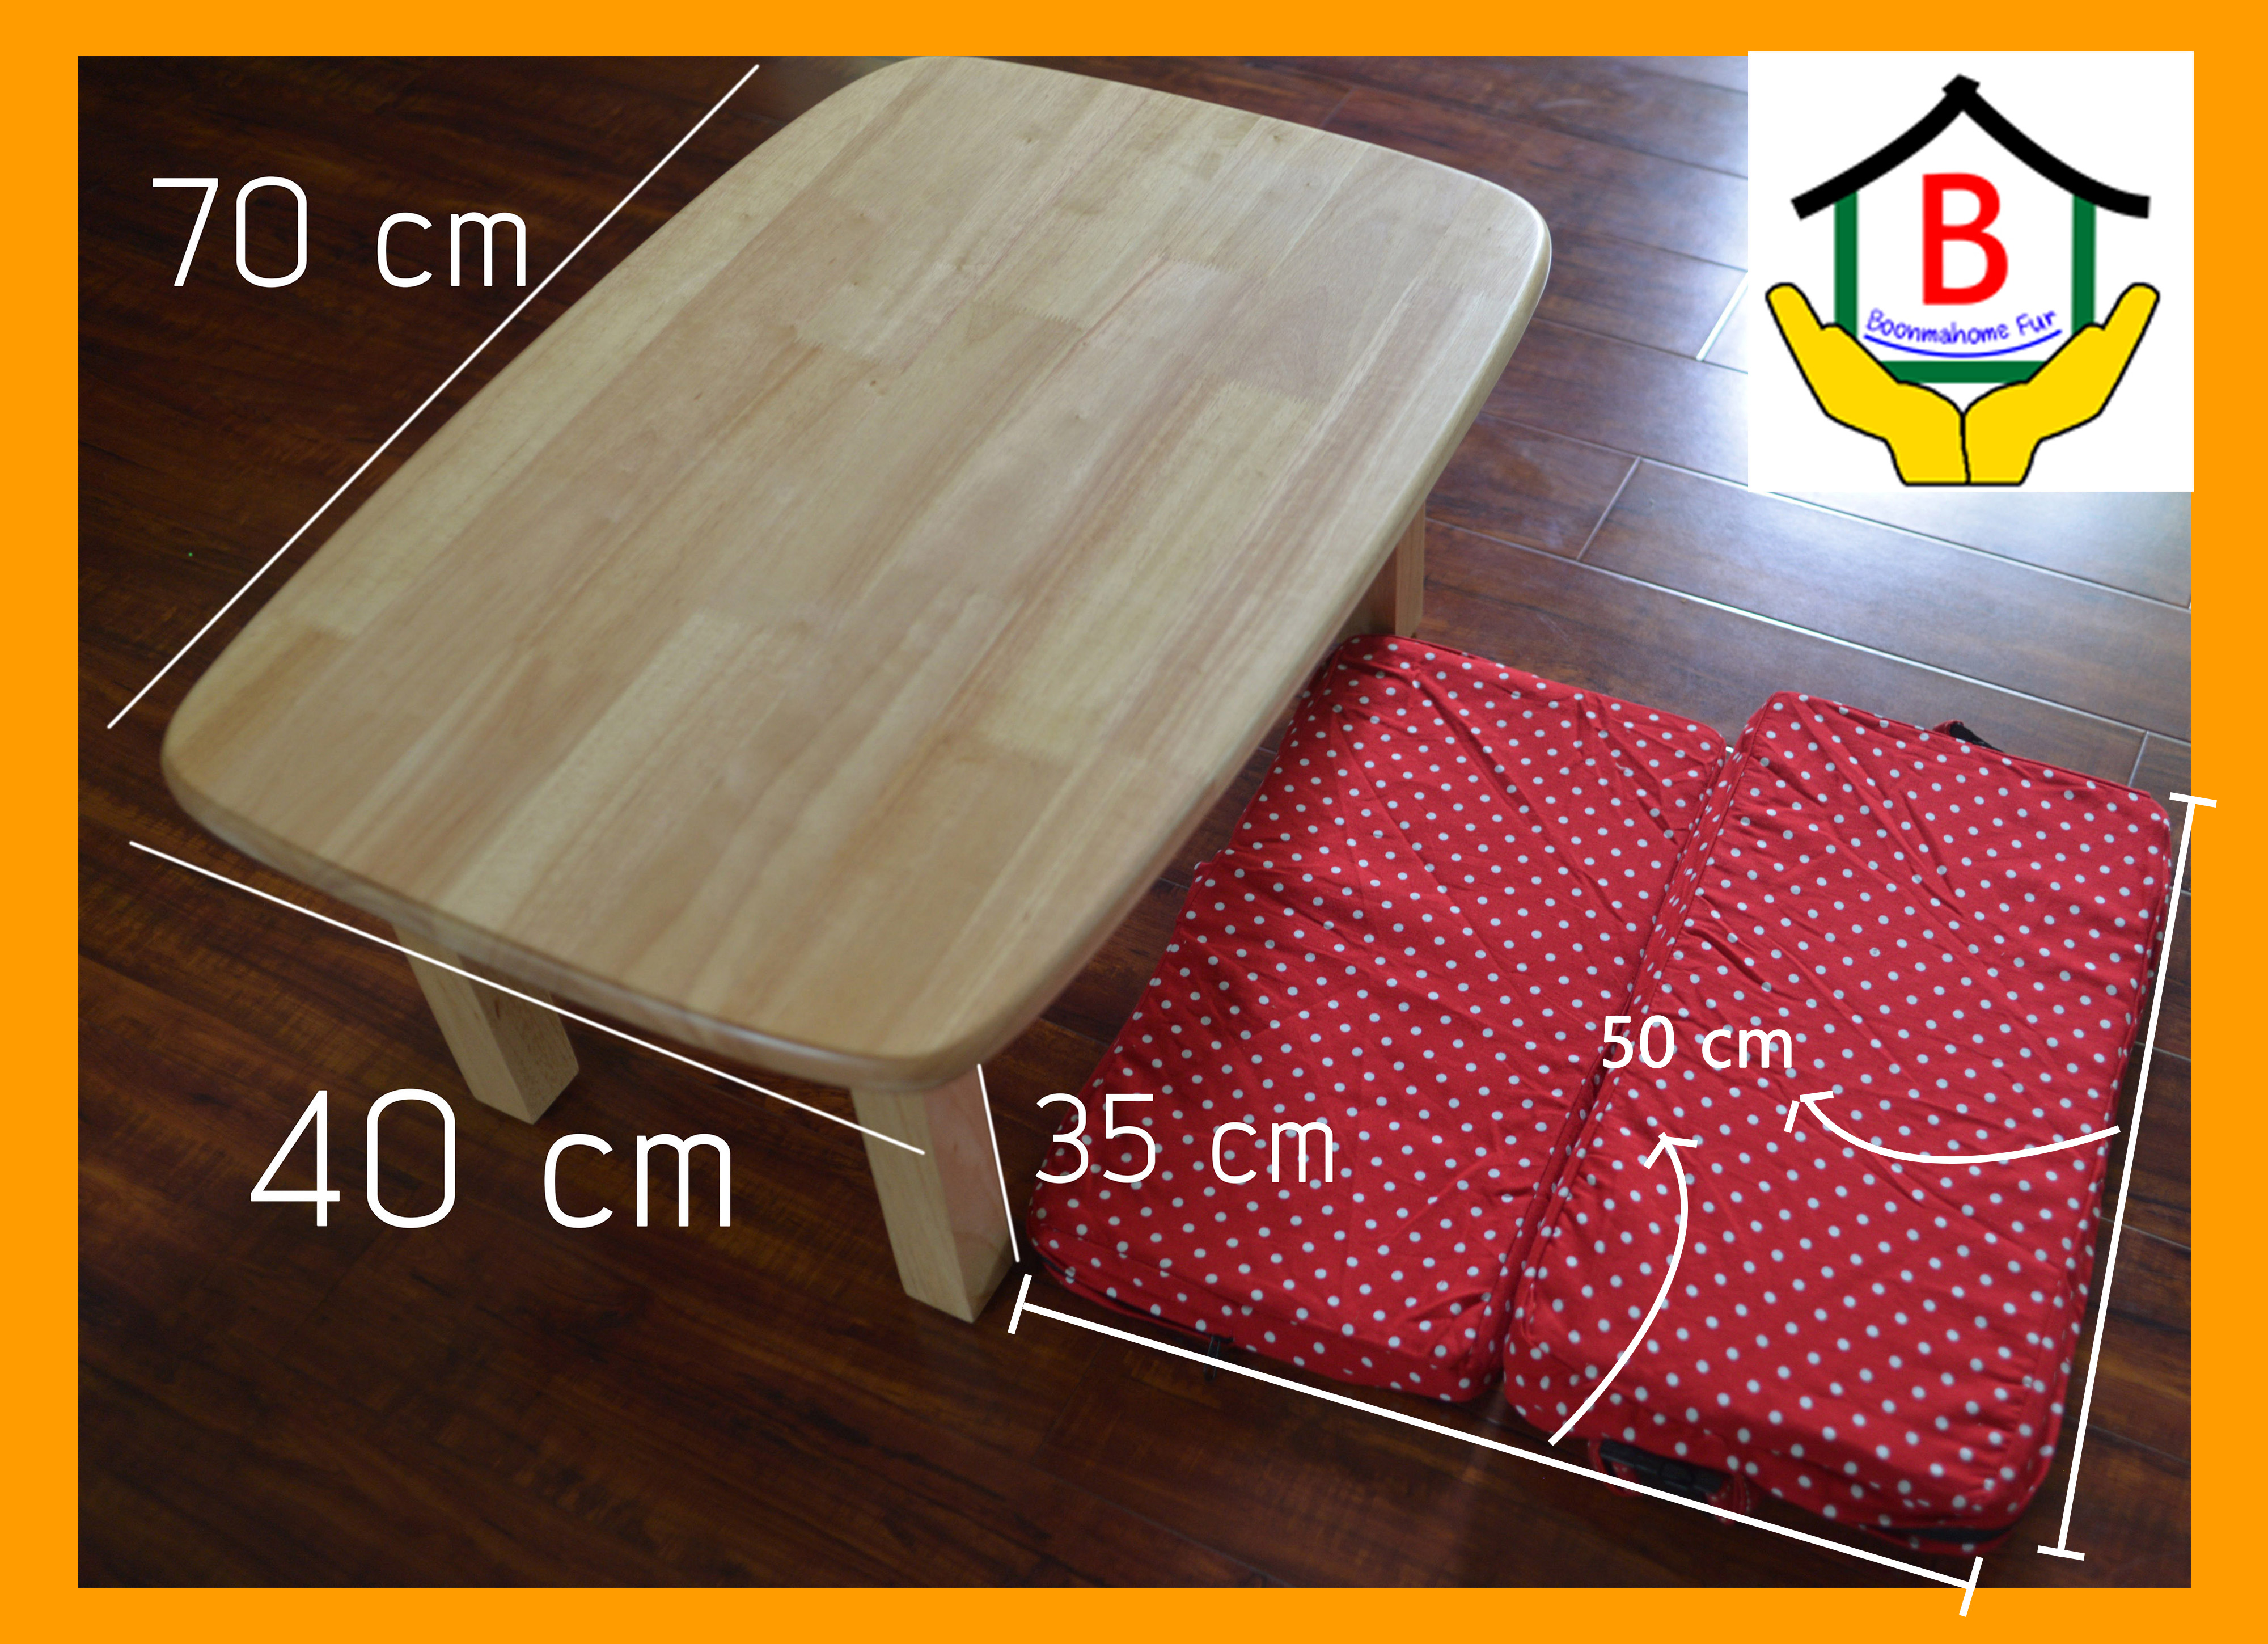 โต๊ะญี่ปุ่นขาตรง โต๊ะญี่ปุ่นขาพับ (เฉพาะโต๊ะ) ขนาด70x40x35 cm